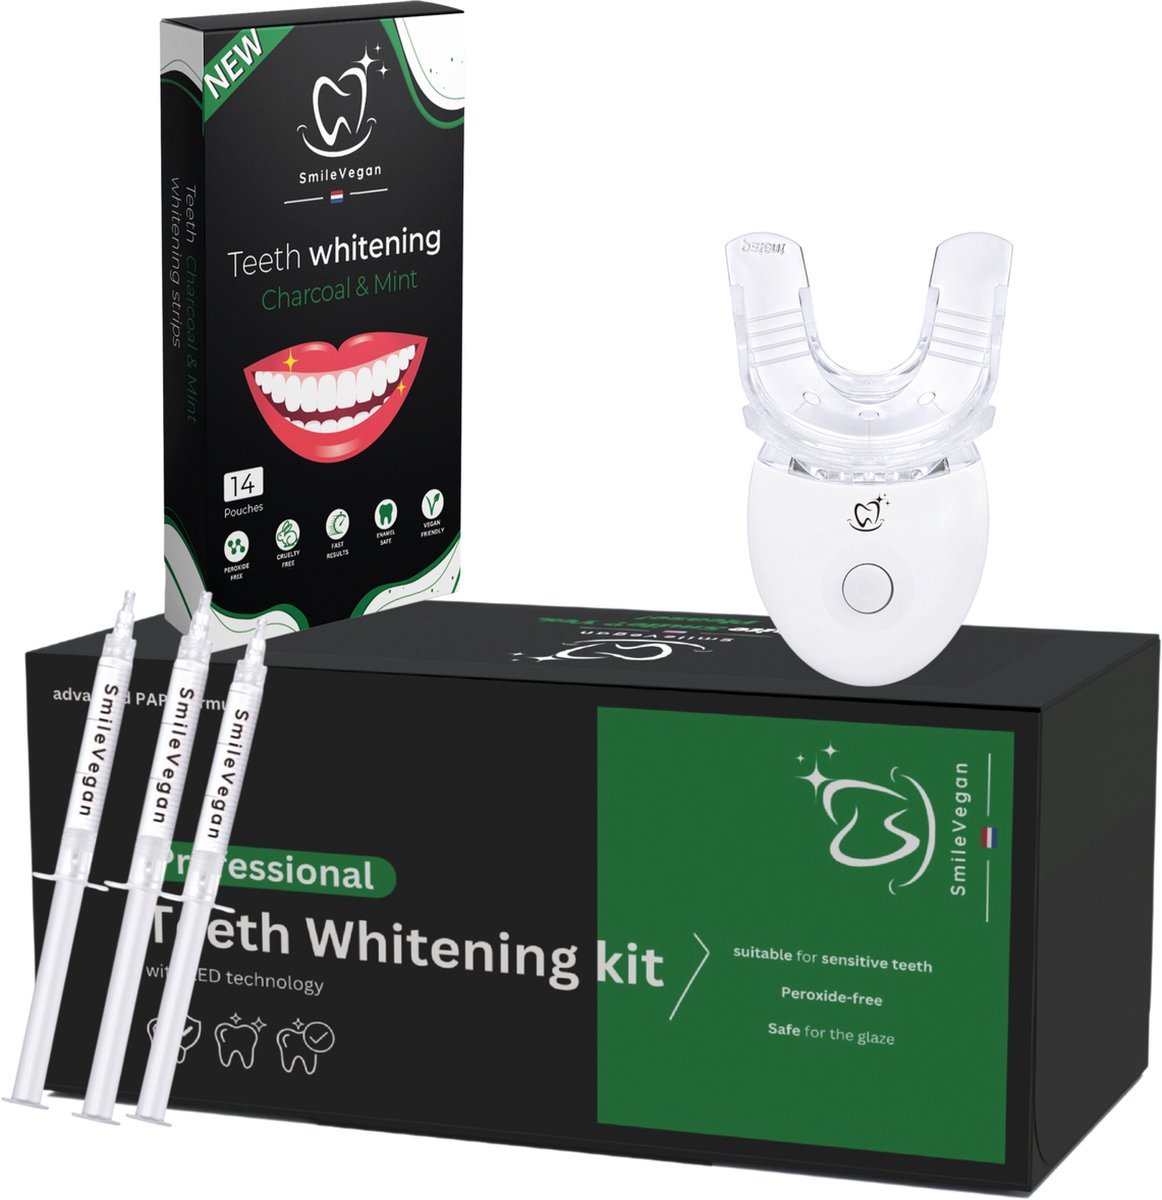 Teeth whitening kit - Zonder peroxide - met handleiding - Tandenbleekset - LED Tanden bleken - Inclusief whitening strips Tanden bleekstrips - 100% natuurlijk & peroxidevrij